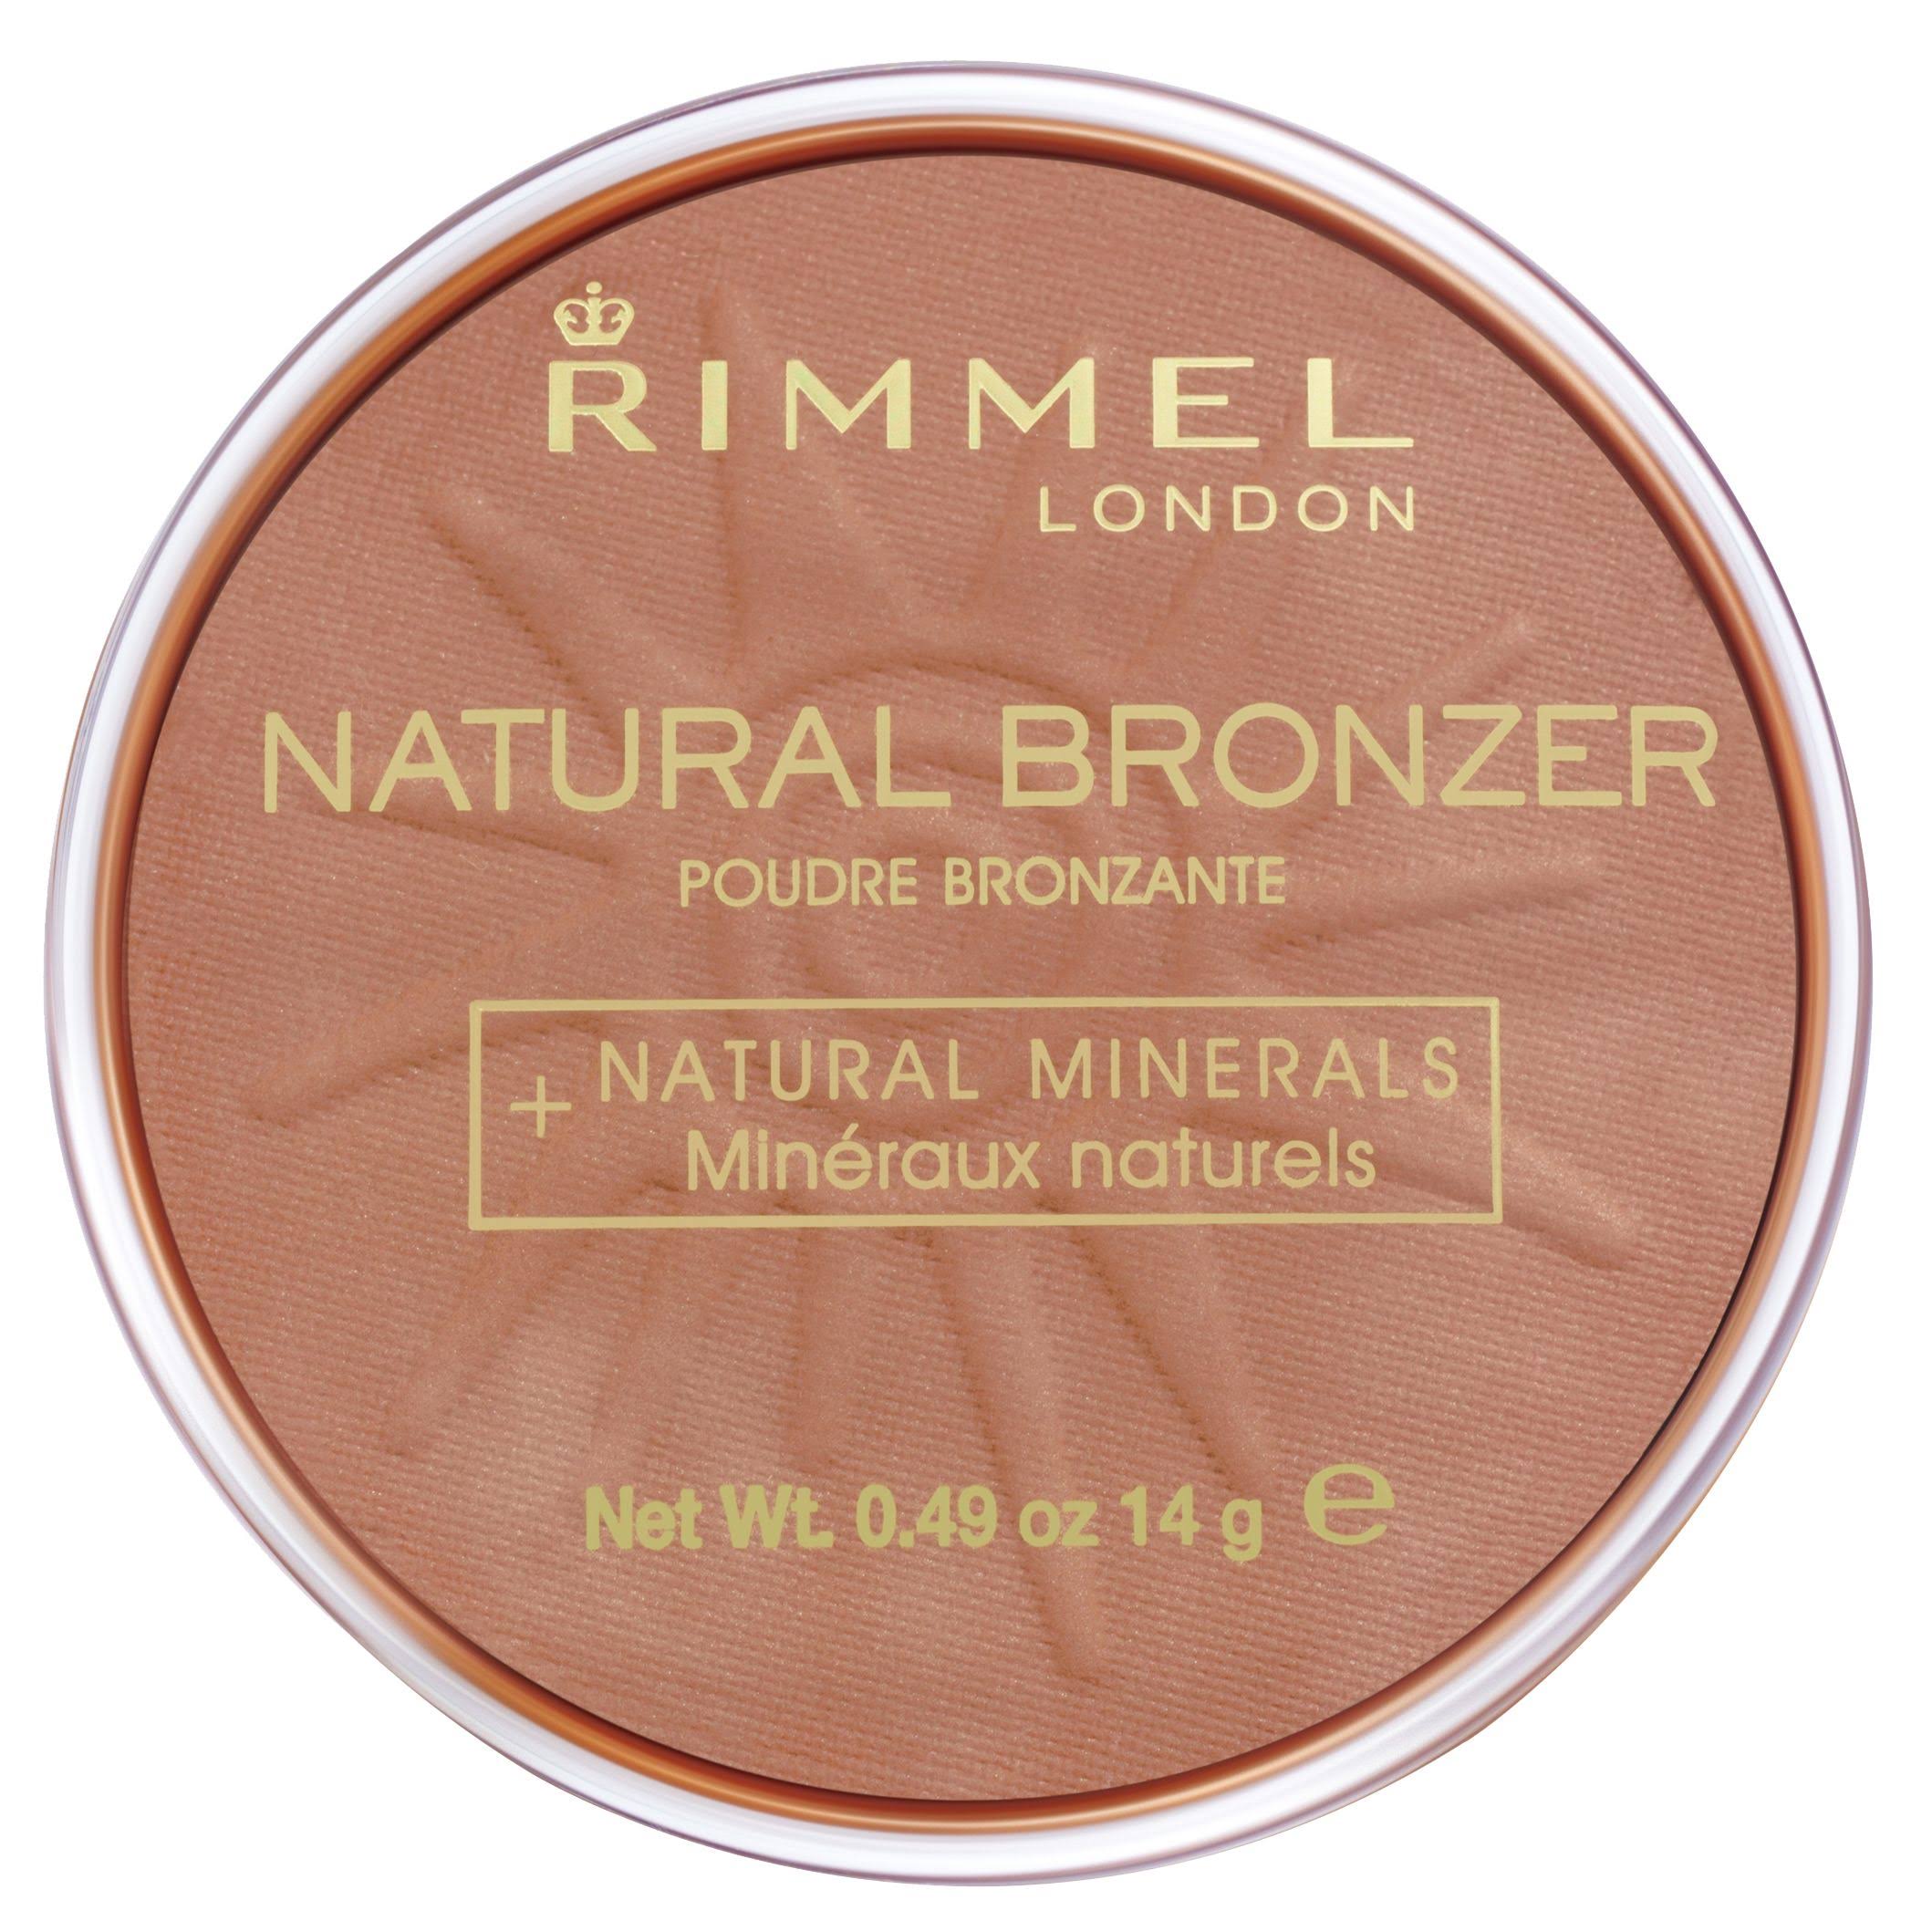 Rimmel London Natural Bronzer - 022 Sun Bronze, 14g